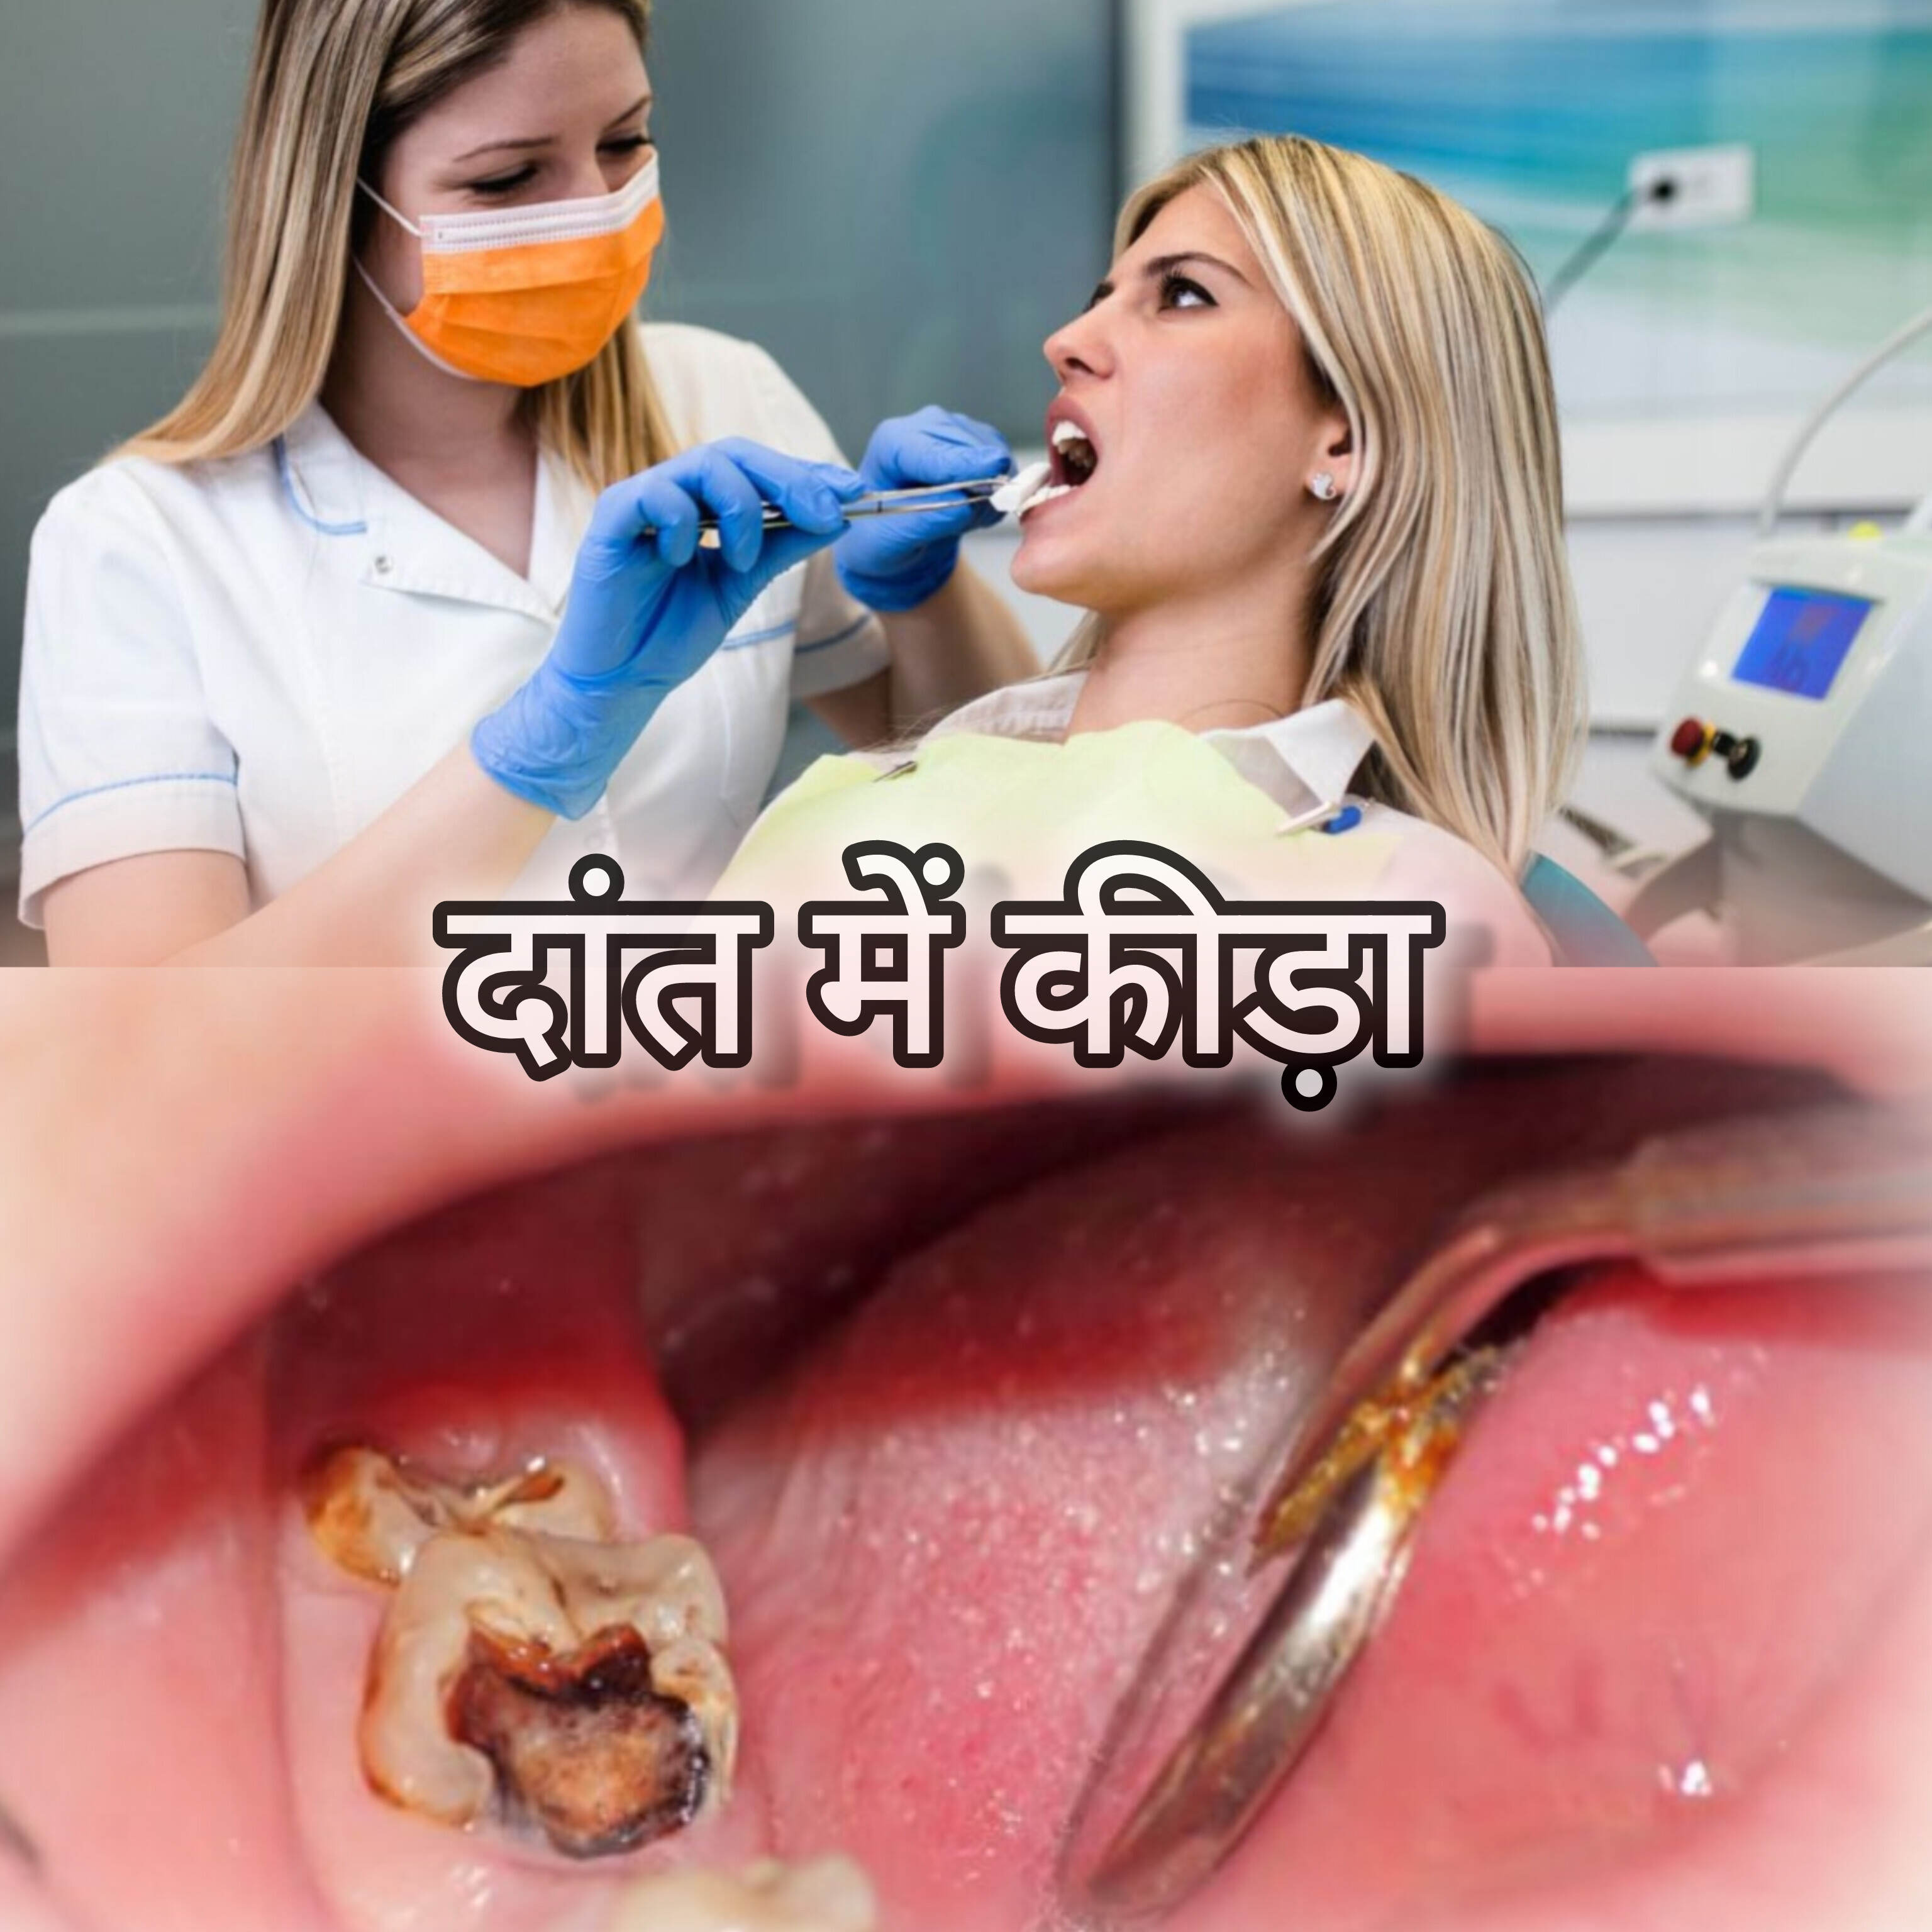 दांत में कीड़ा लग जाए तो क्या करें?